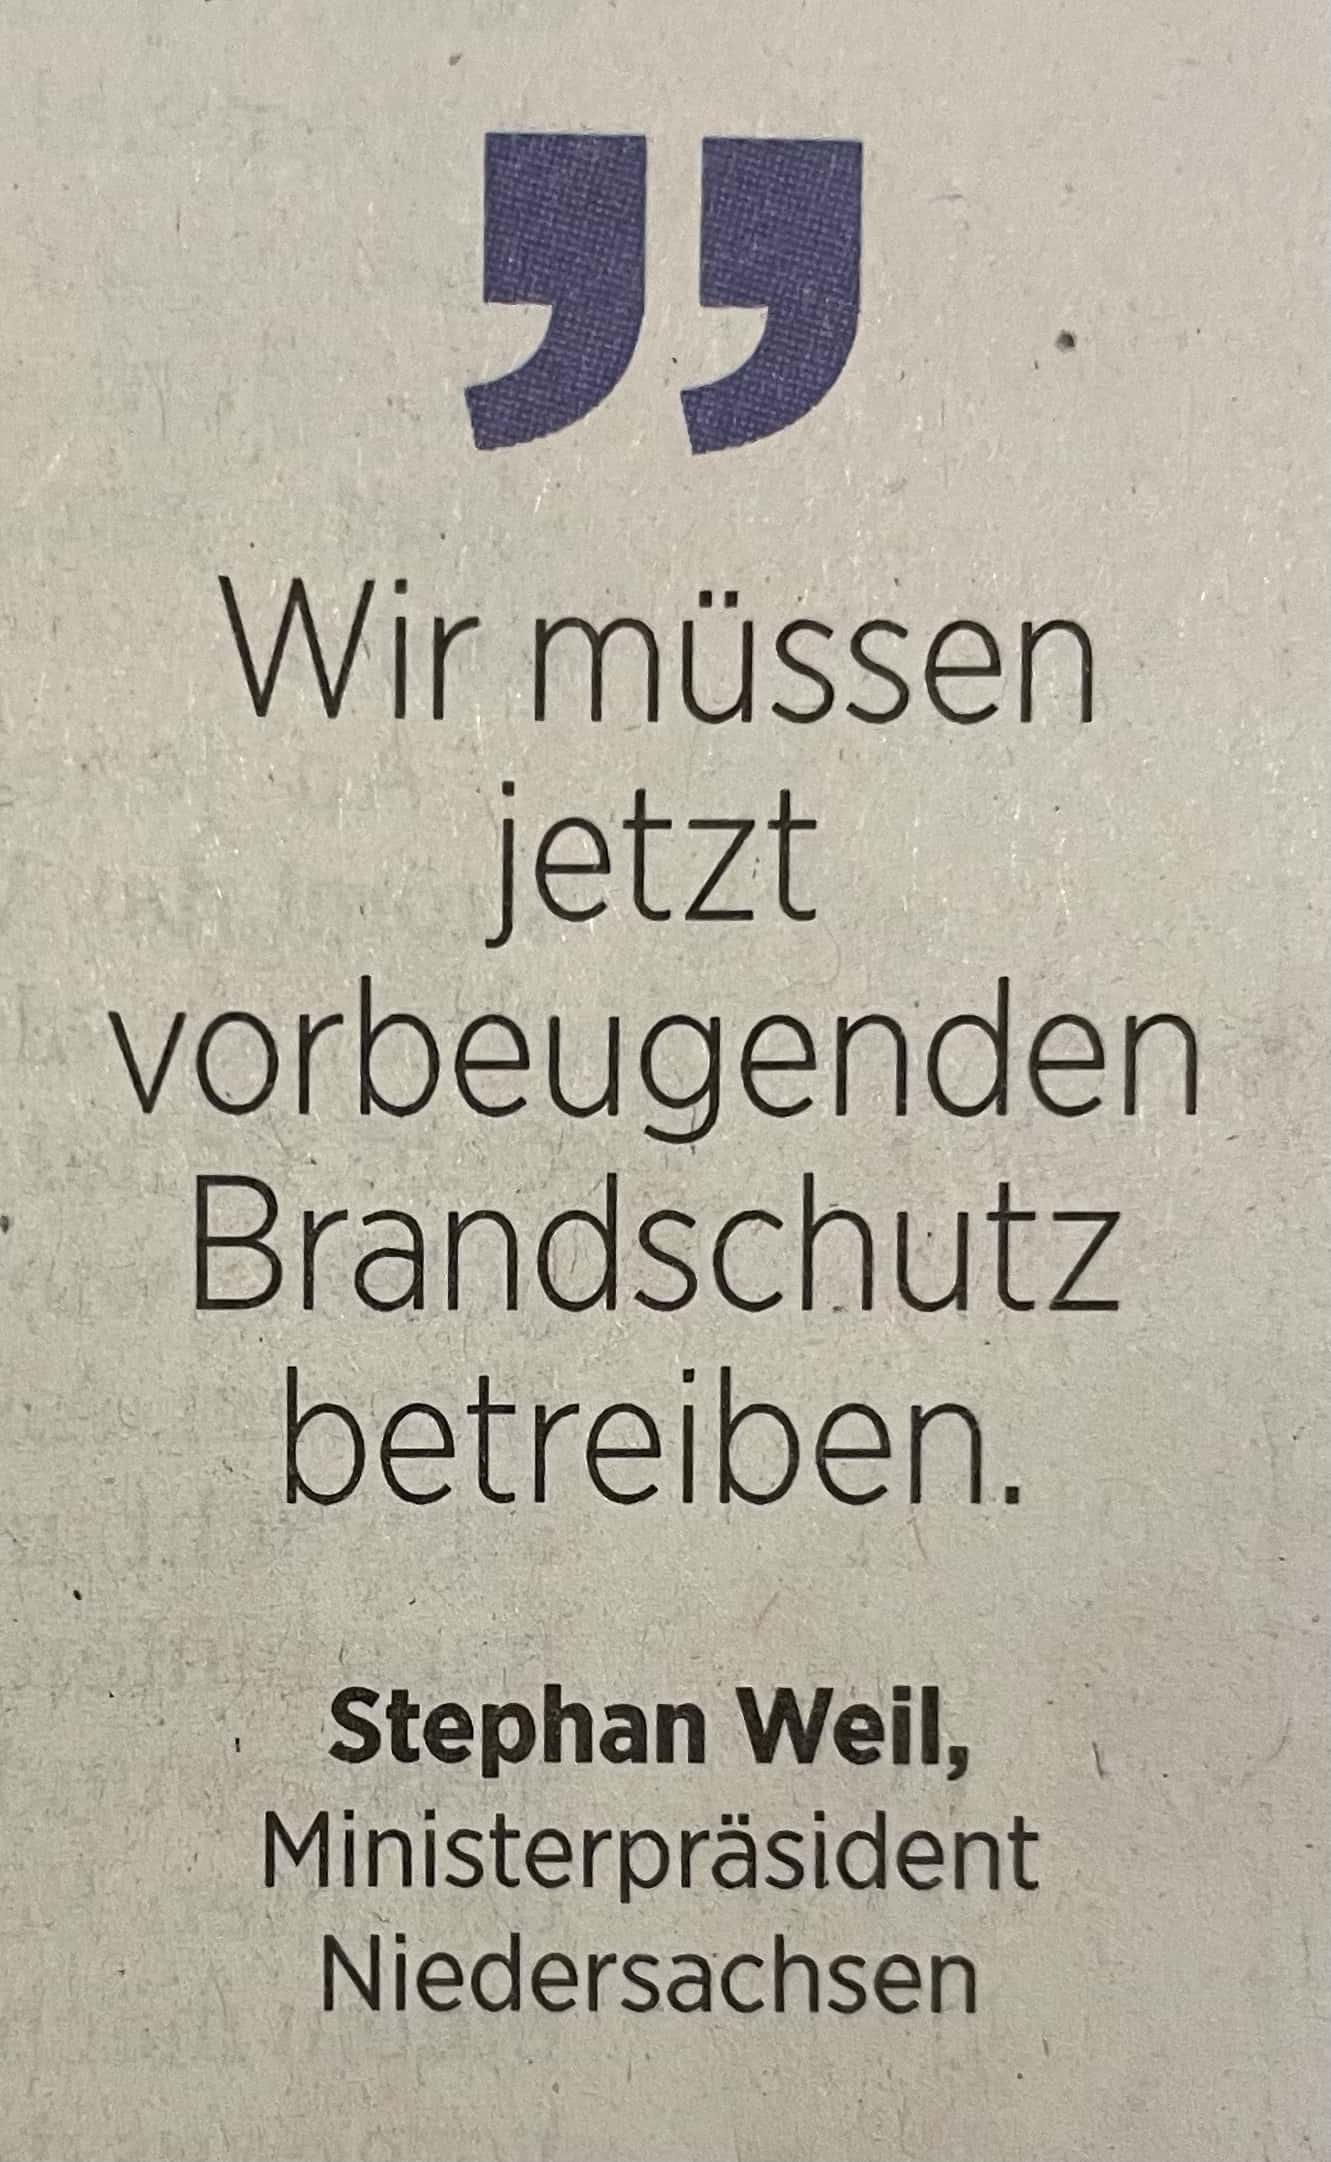 Zitat Ministerpräsident Stephan Weil